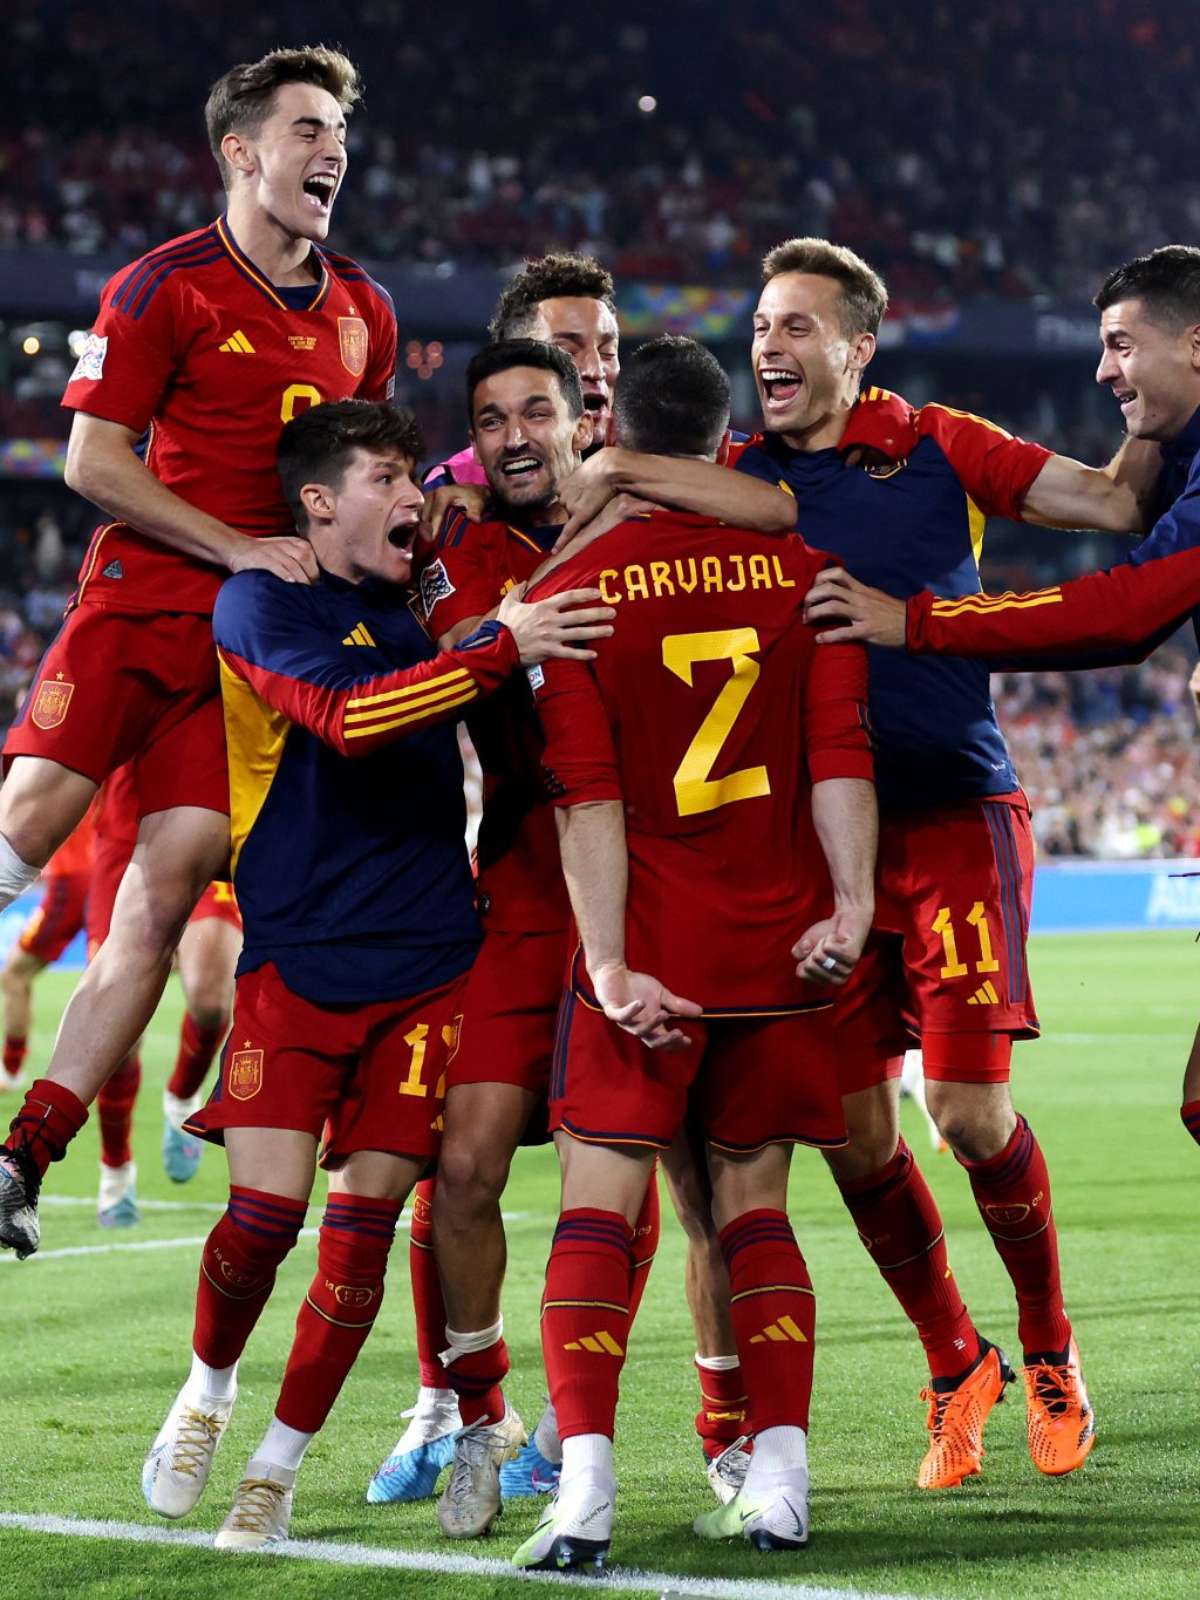 Espanha x França: Veja lances da final da Nations League